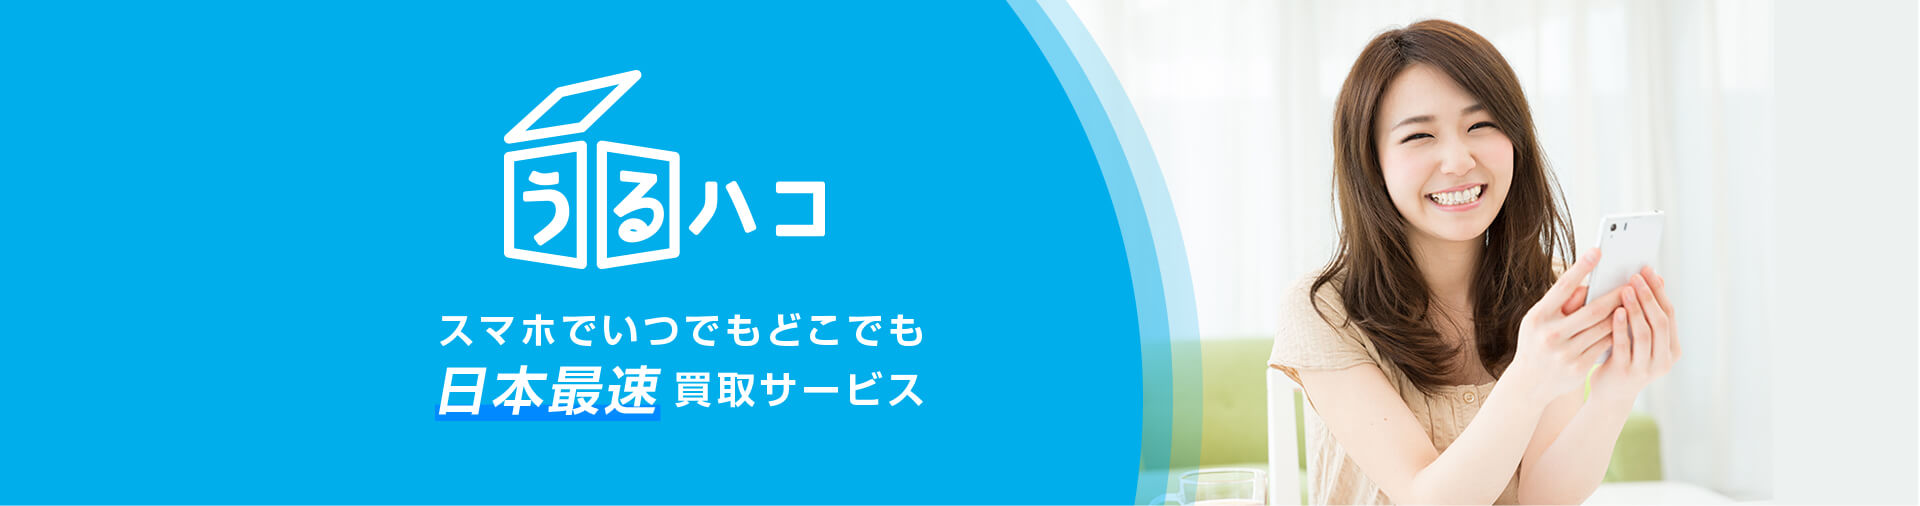 日本最速ブランド宅配買取サービス「うるハコ」